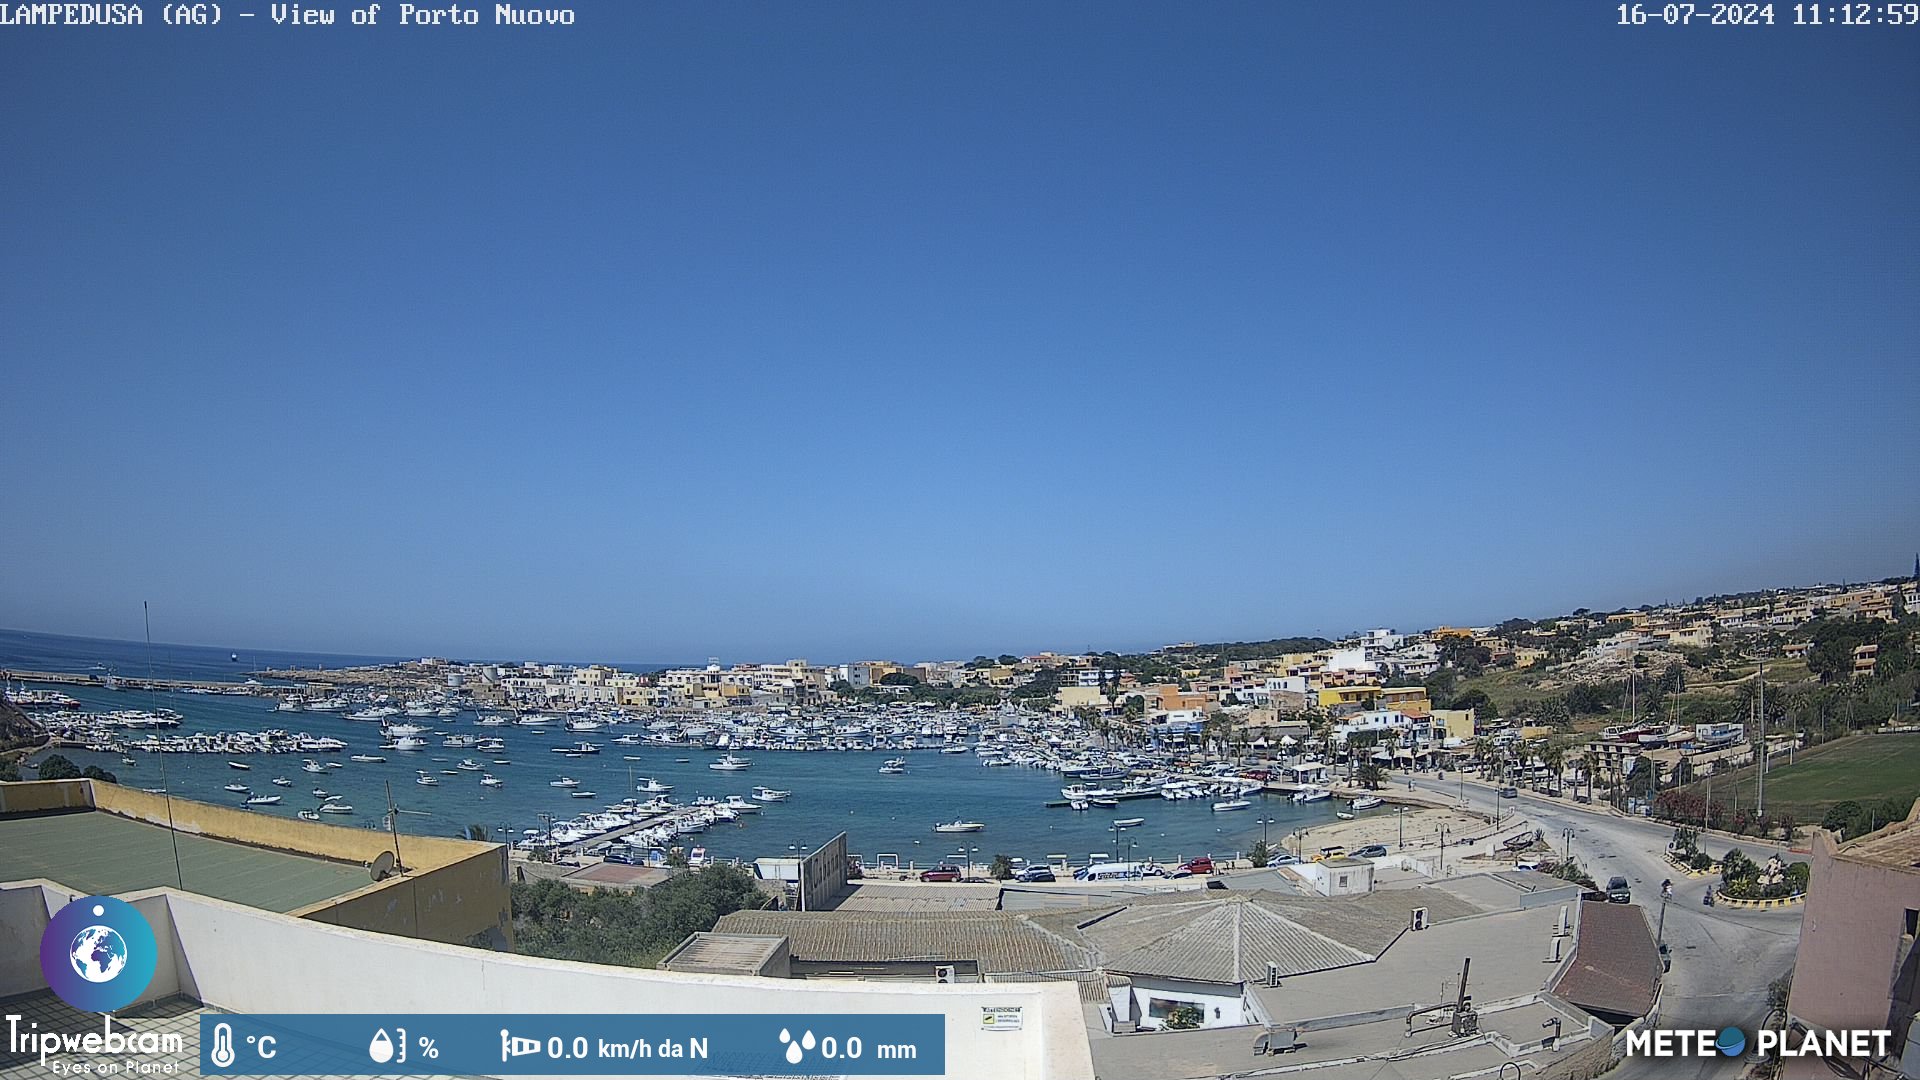 Webcam di Lampedusa - Porto Nuovo